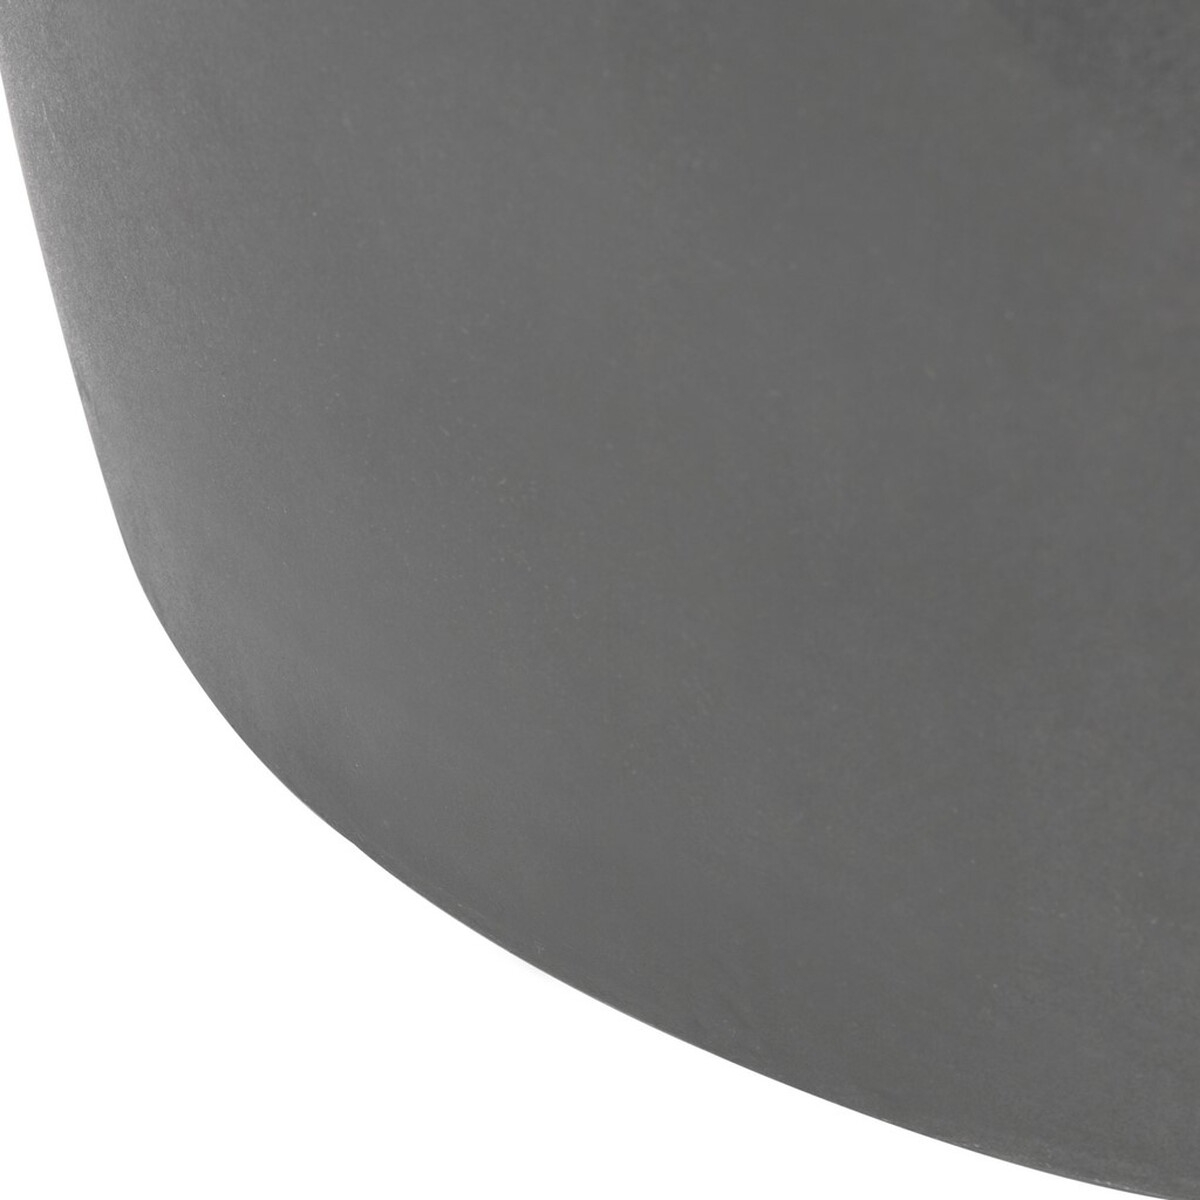 Zuri Indoor/Outdoor Modern Concrete Round 17.7-Inch H Accent Table - Dark Grey - Arlo Home - Image 6